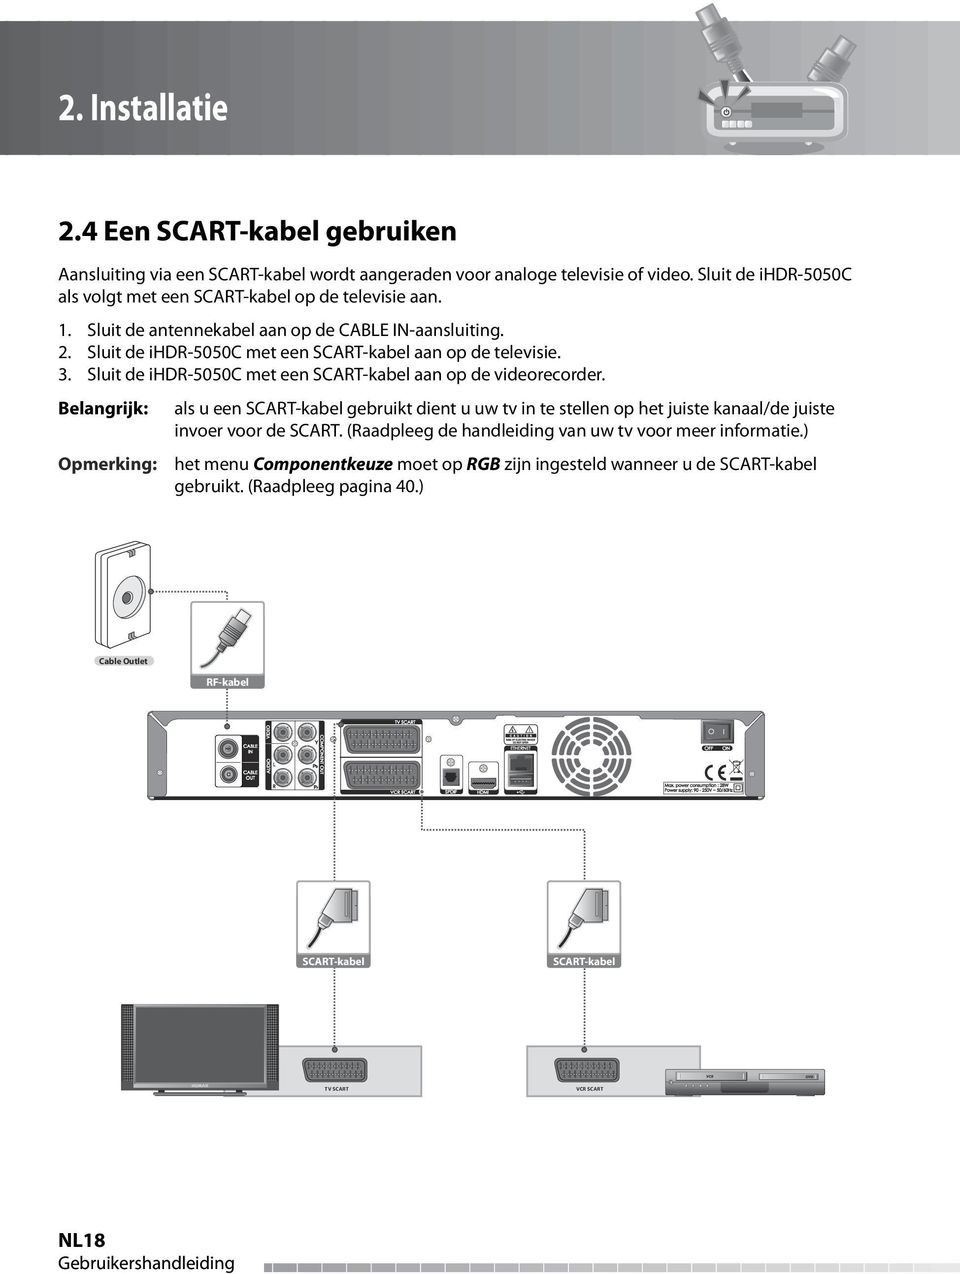 L AUDIO R COMPONENT IN S/PDIF 3. Sluit de ihdr-5050c met een SCART-kabel aan op de videorecorder.